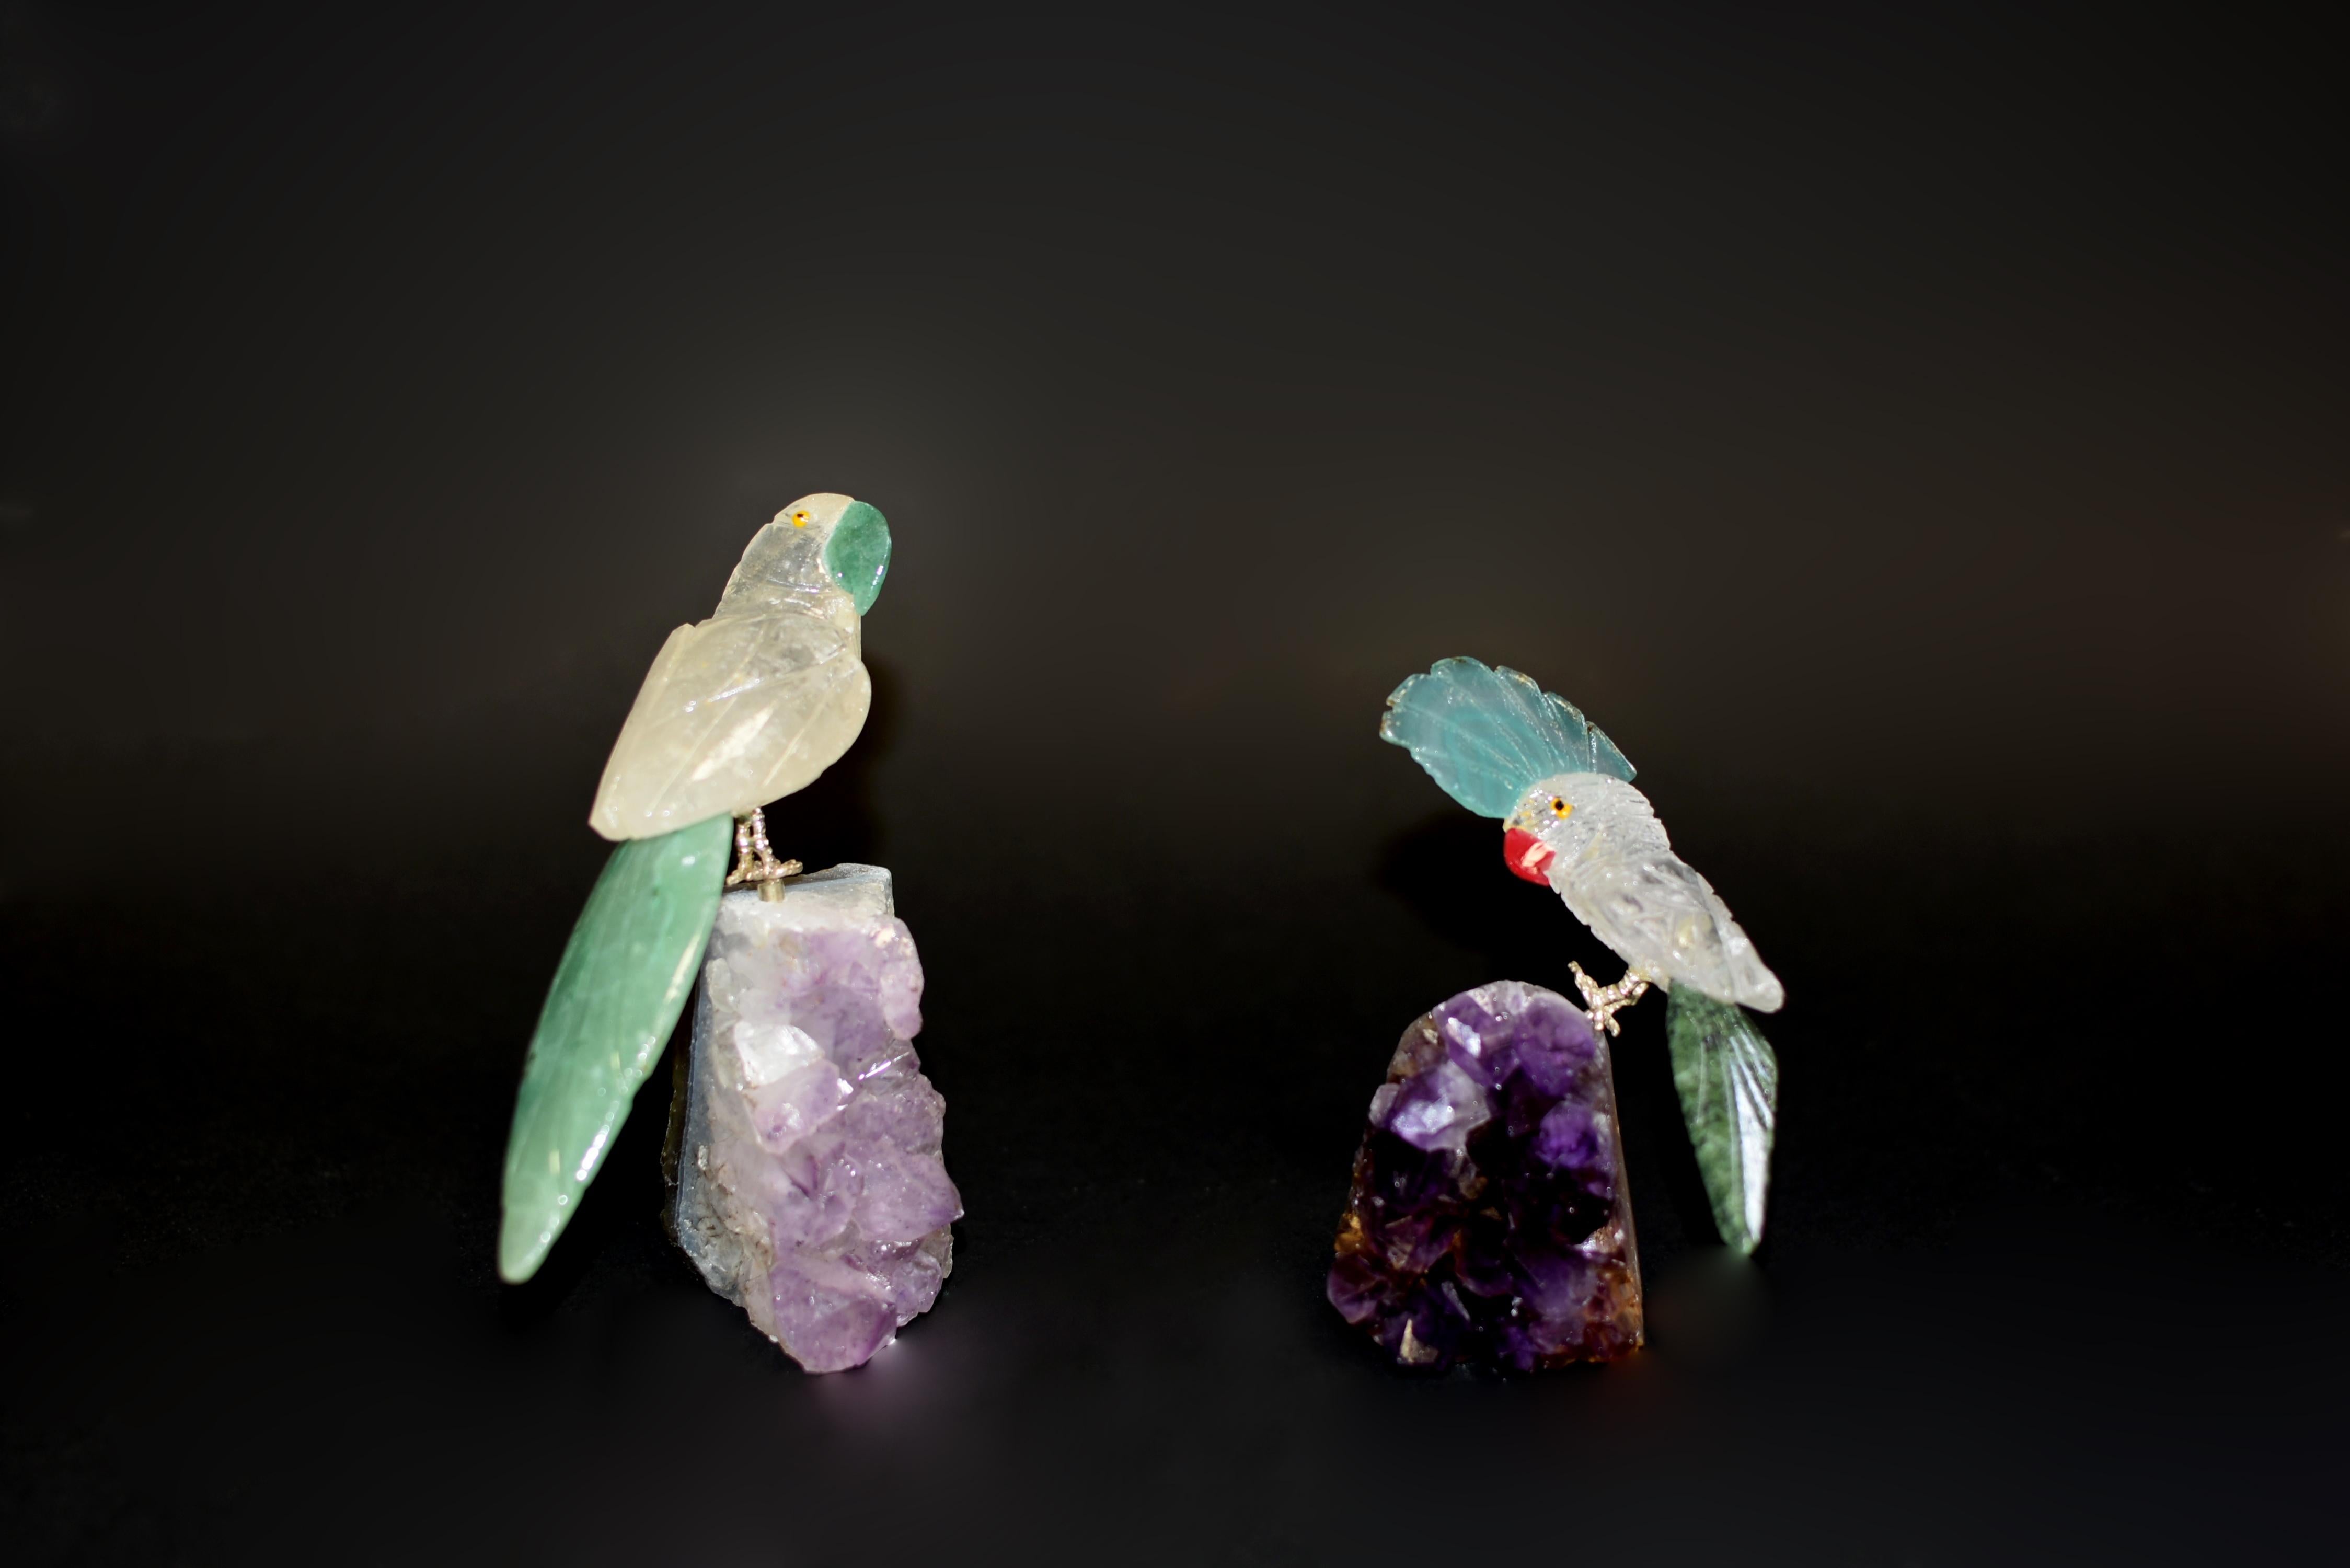 Zwei Bergkristall-Papageien, die auf Amethystbüscheln sitzen. Realistisch modelliert mit neugierigem und amüsantem Ausdruck, mit natürlichem Bergkristallgefieder, Aventurin und grünem Serpentinschwanz. Schnabel aus Aventurin und Krone aus Achat. Die